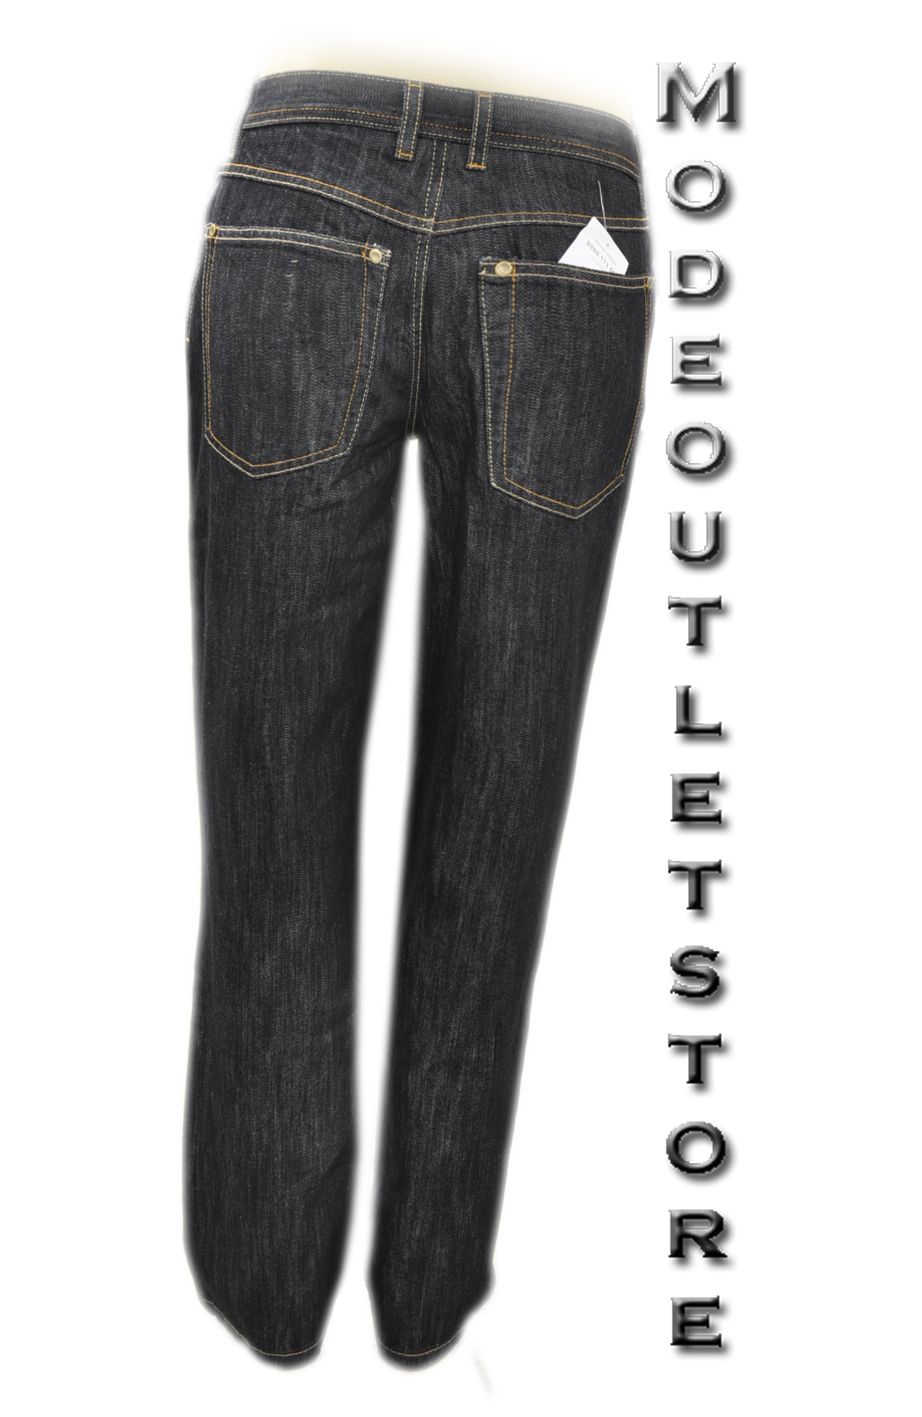 Pure and Simple Denim Herren Jeans Hose Blau Stylisch Modern